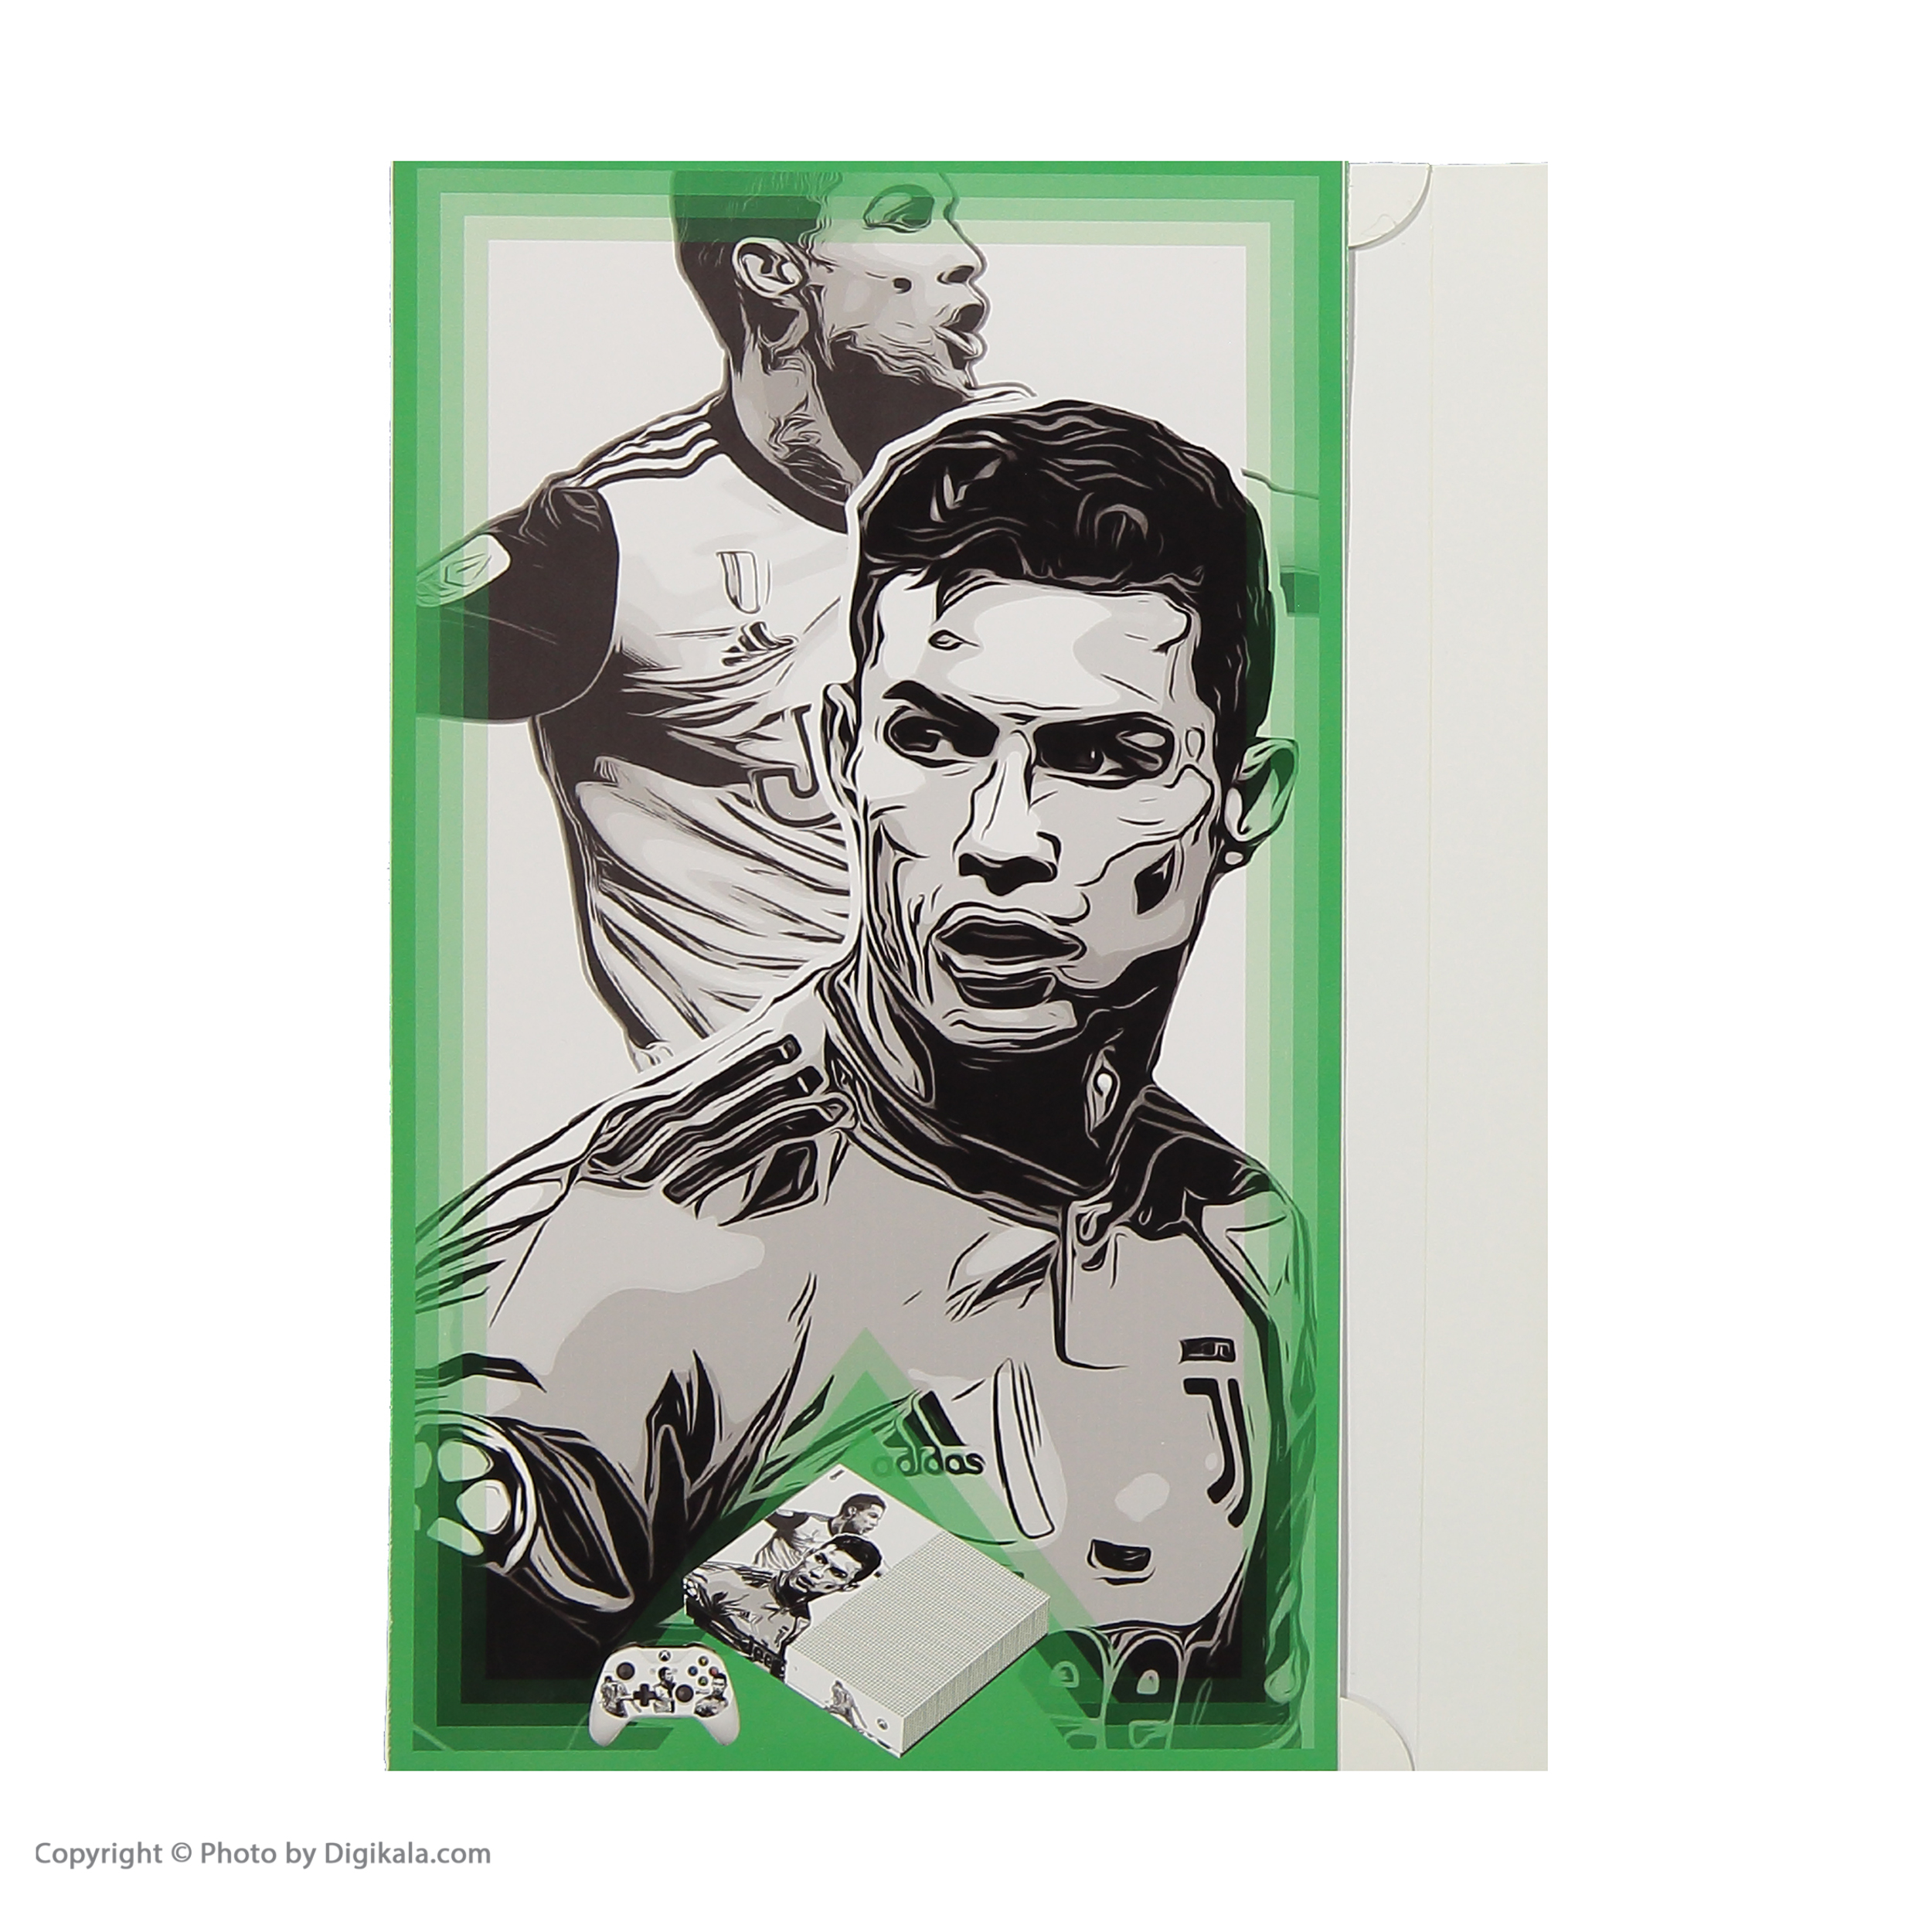 برچسب ایکس باکس وان اس پلی اینفینی مدل  Cristiano Ronaldo 01 به همراه برچسب دسته